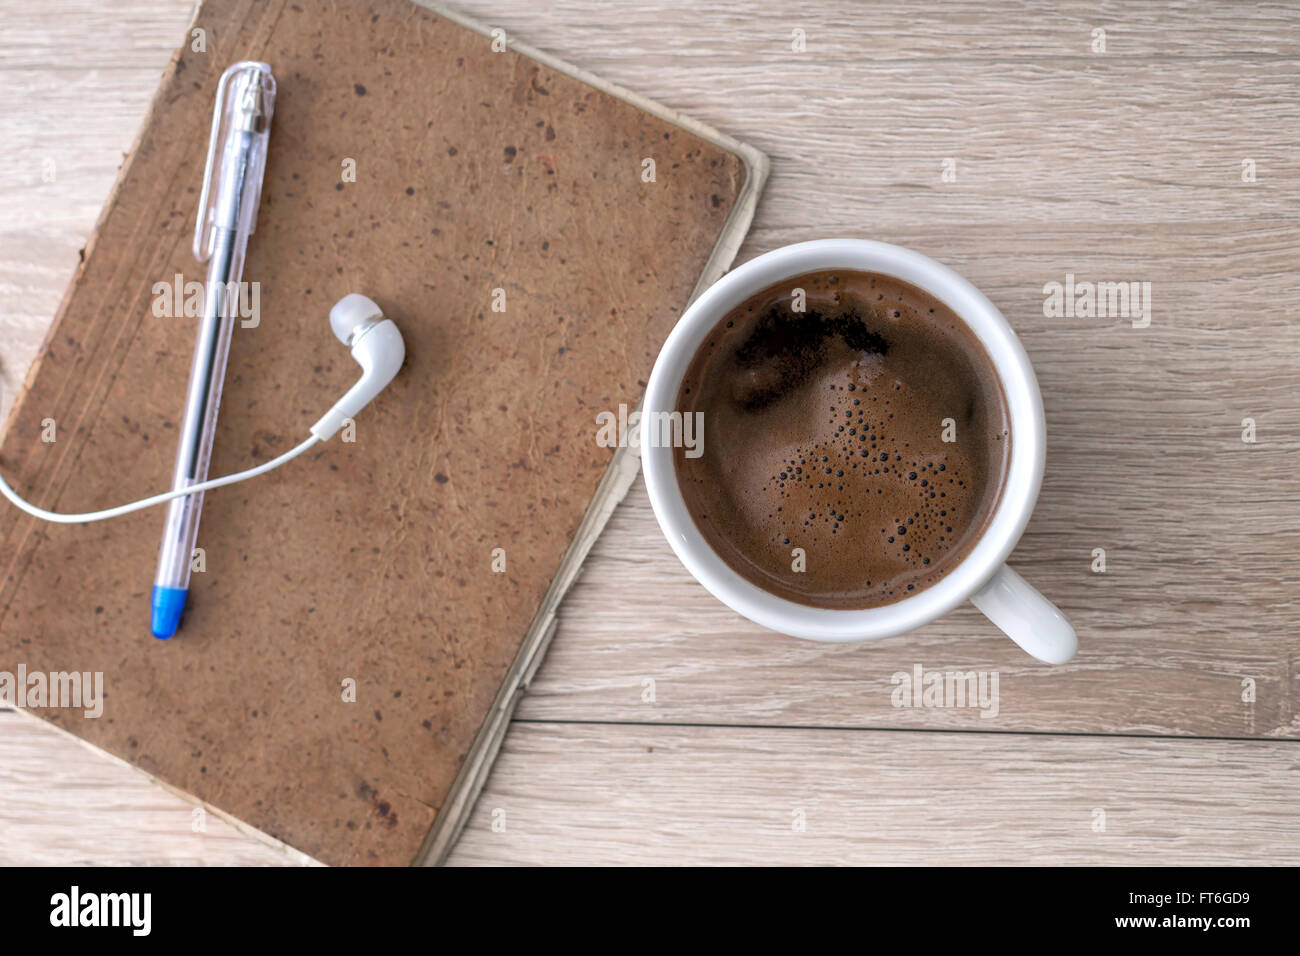 Le café, le bloc-notes, des écouteurs et d'un crayon, sur le bureau. Banque D'Images